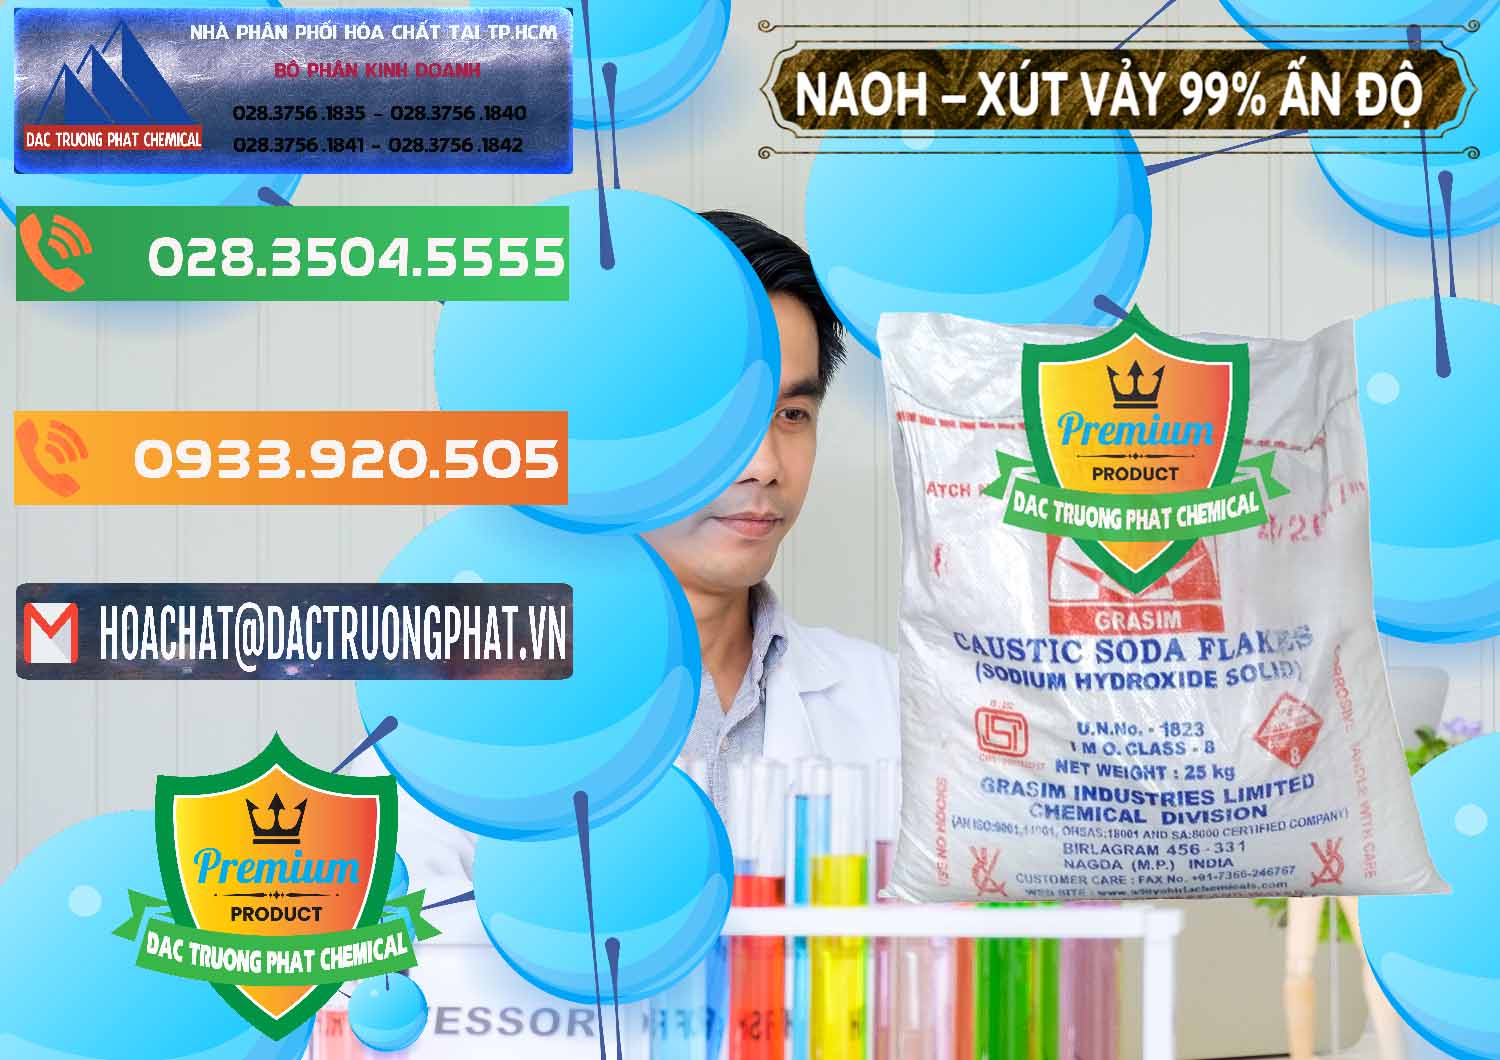 Cty chuyên bán và phân phối Xút Vảy - NaOH Vảy 99% Aditya Birla Grasim Ấn Độ India - 0171 - Kinh doanh ( phân phối ) hóa chất tại TP.HCM - hoachatxulynuoc.com.vn